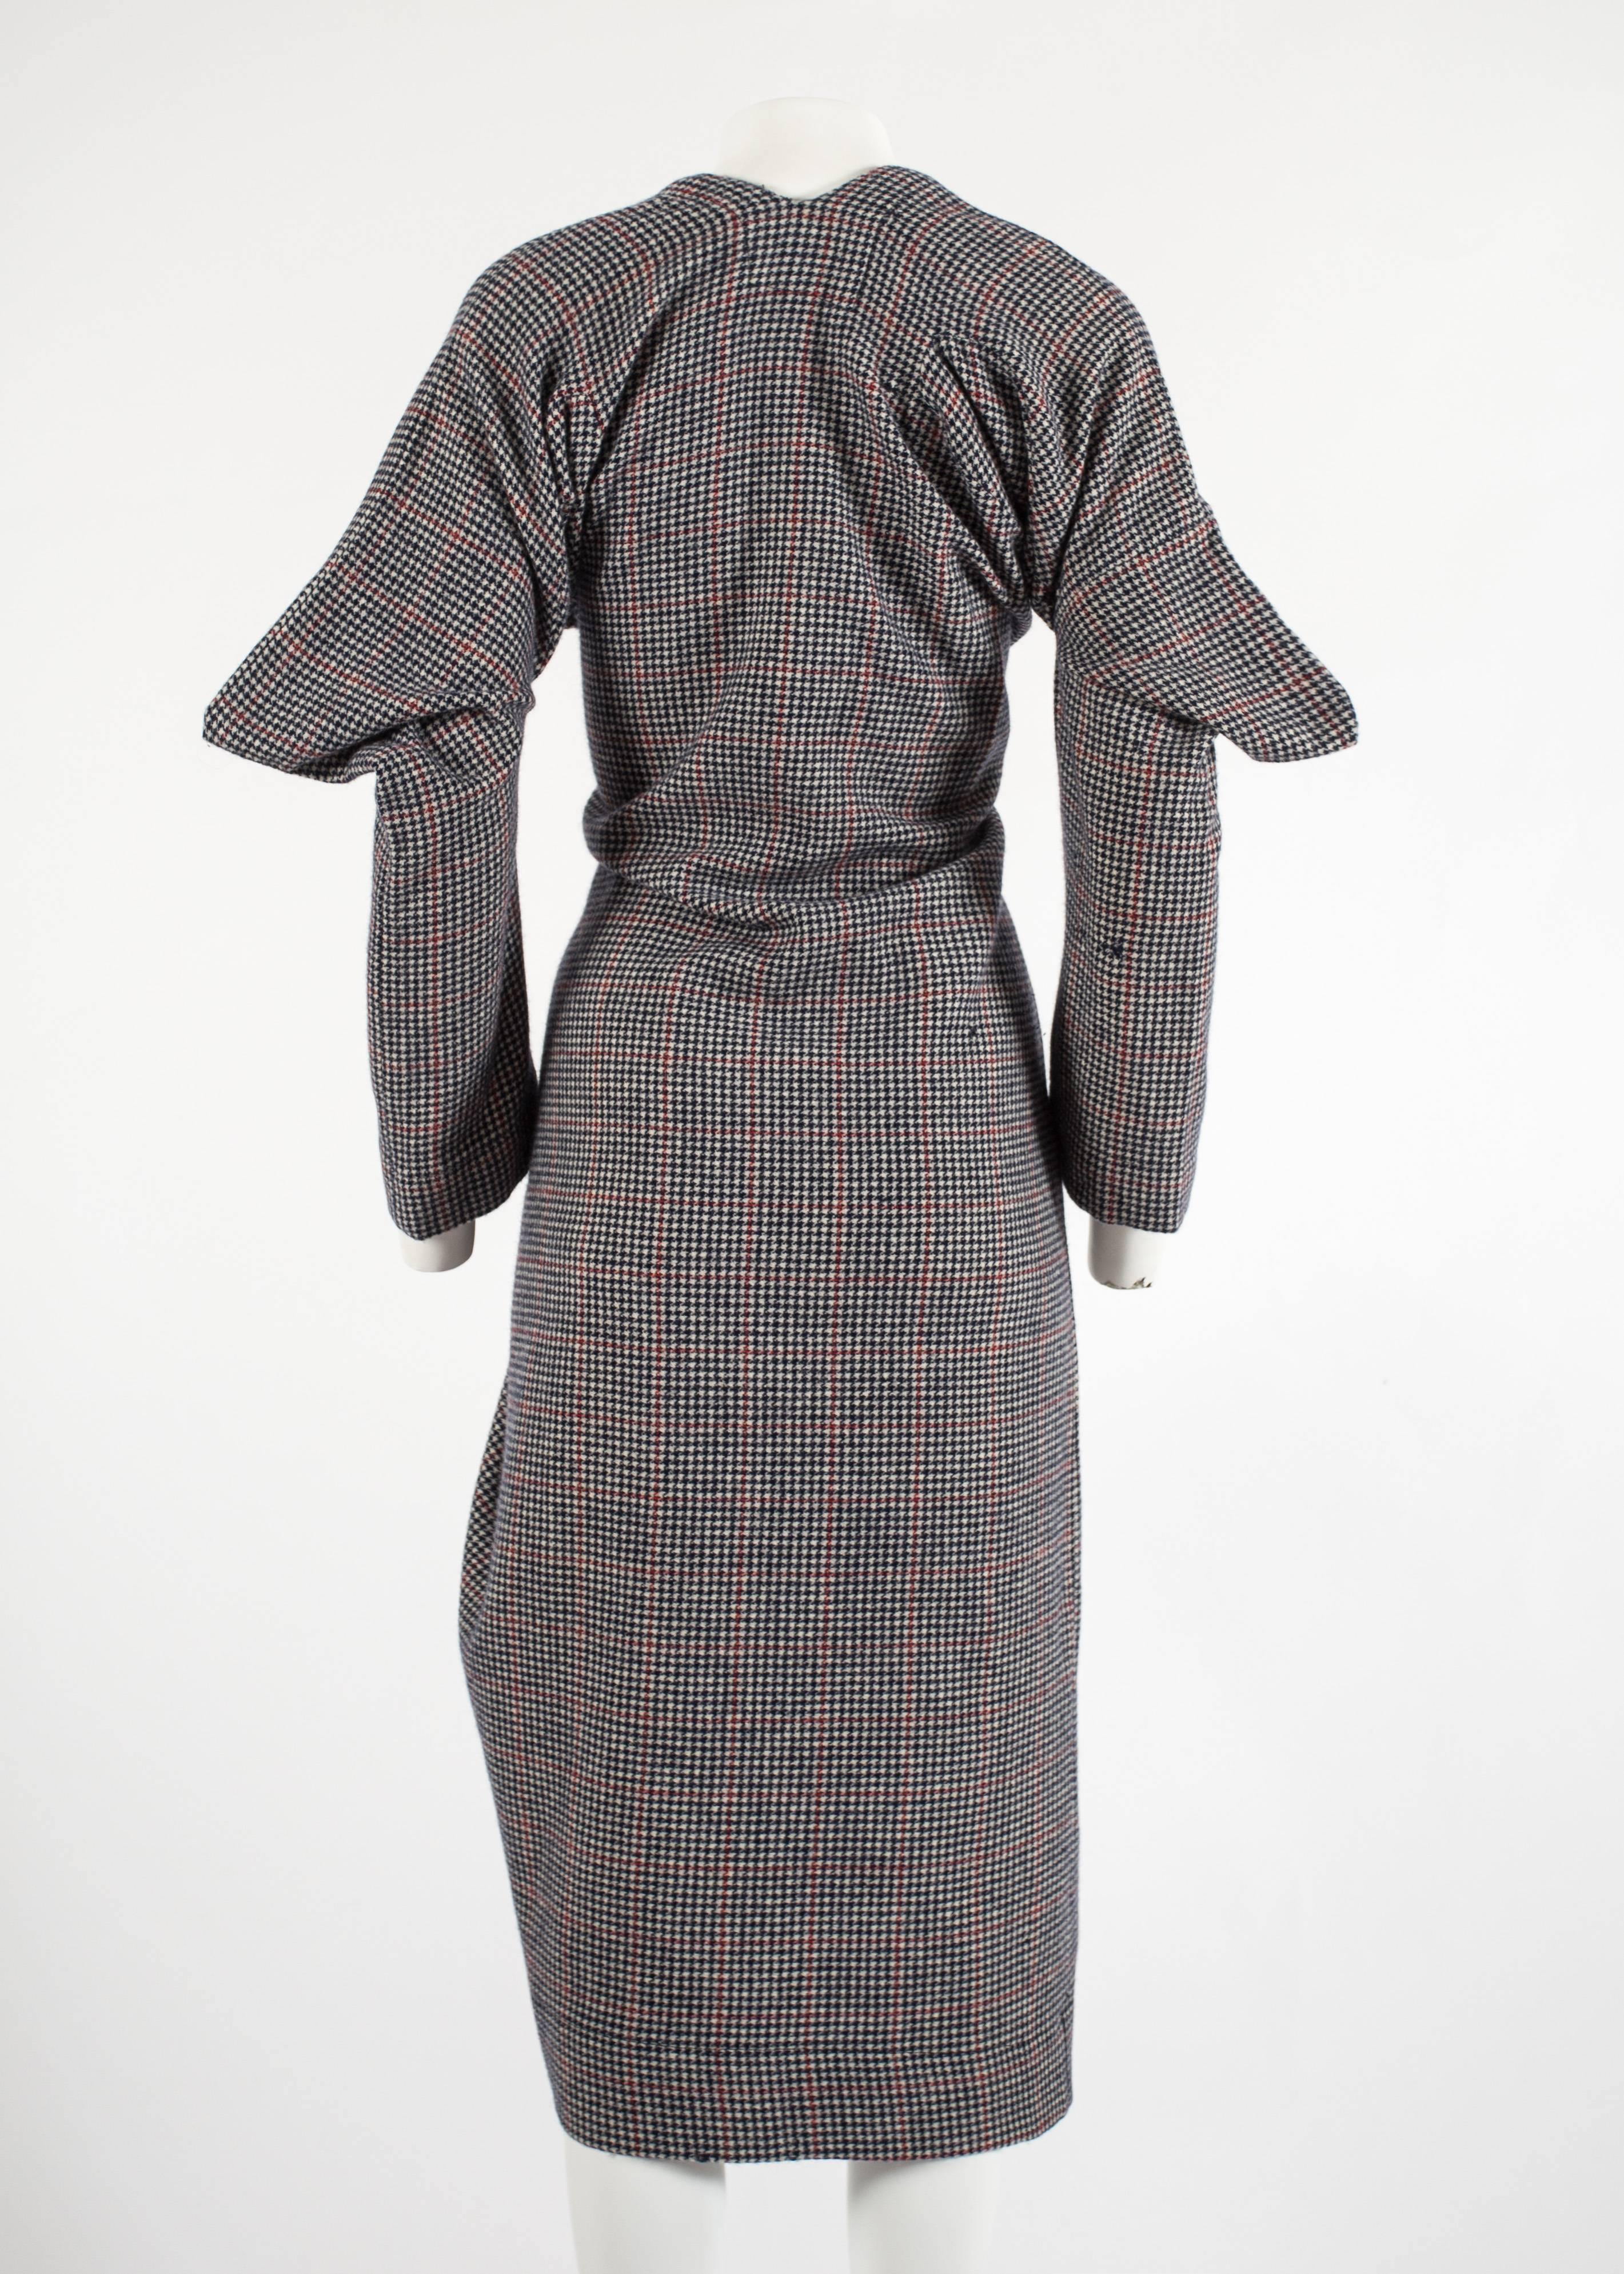 Worlds End von Vivienne Westwood Kariertes Kleid „Witches“ aus Wolle, H/W 1983 1